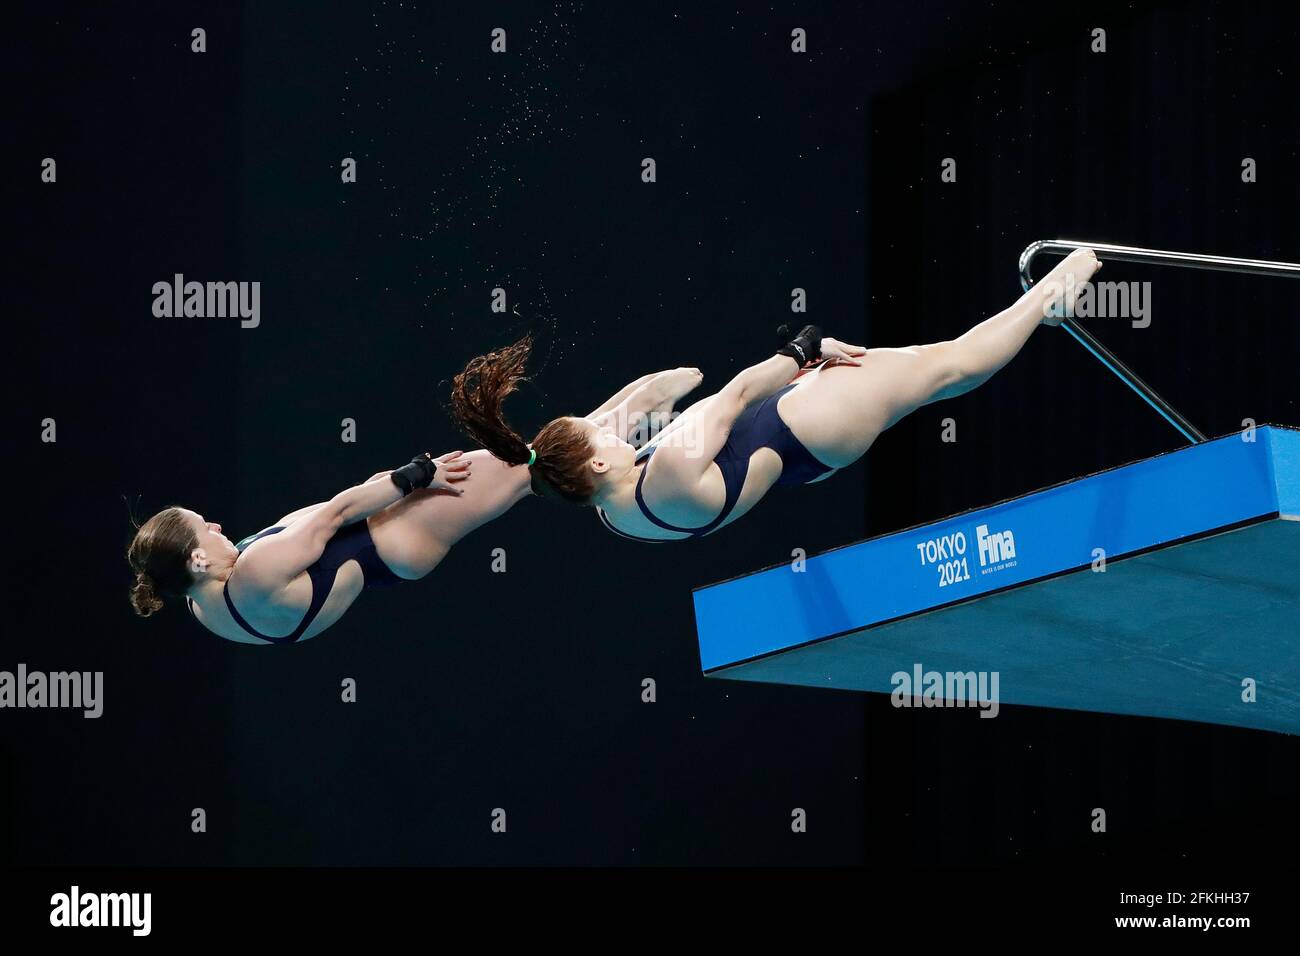 Diving Fina Diving World Cup 2021 And Tokyo 2020 Olympics Aquatics Test Event Tokyo Aquatics